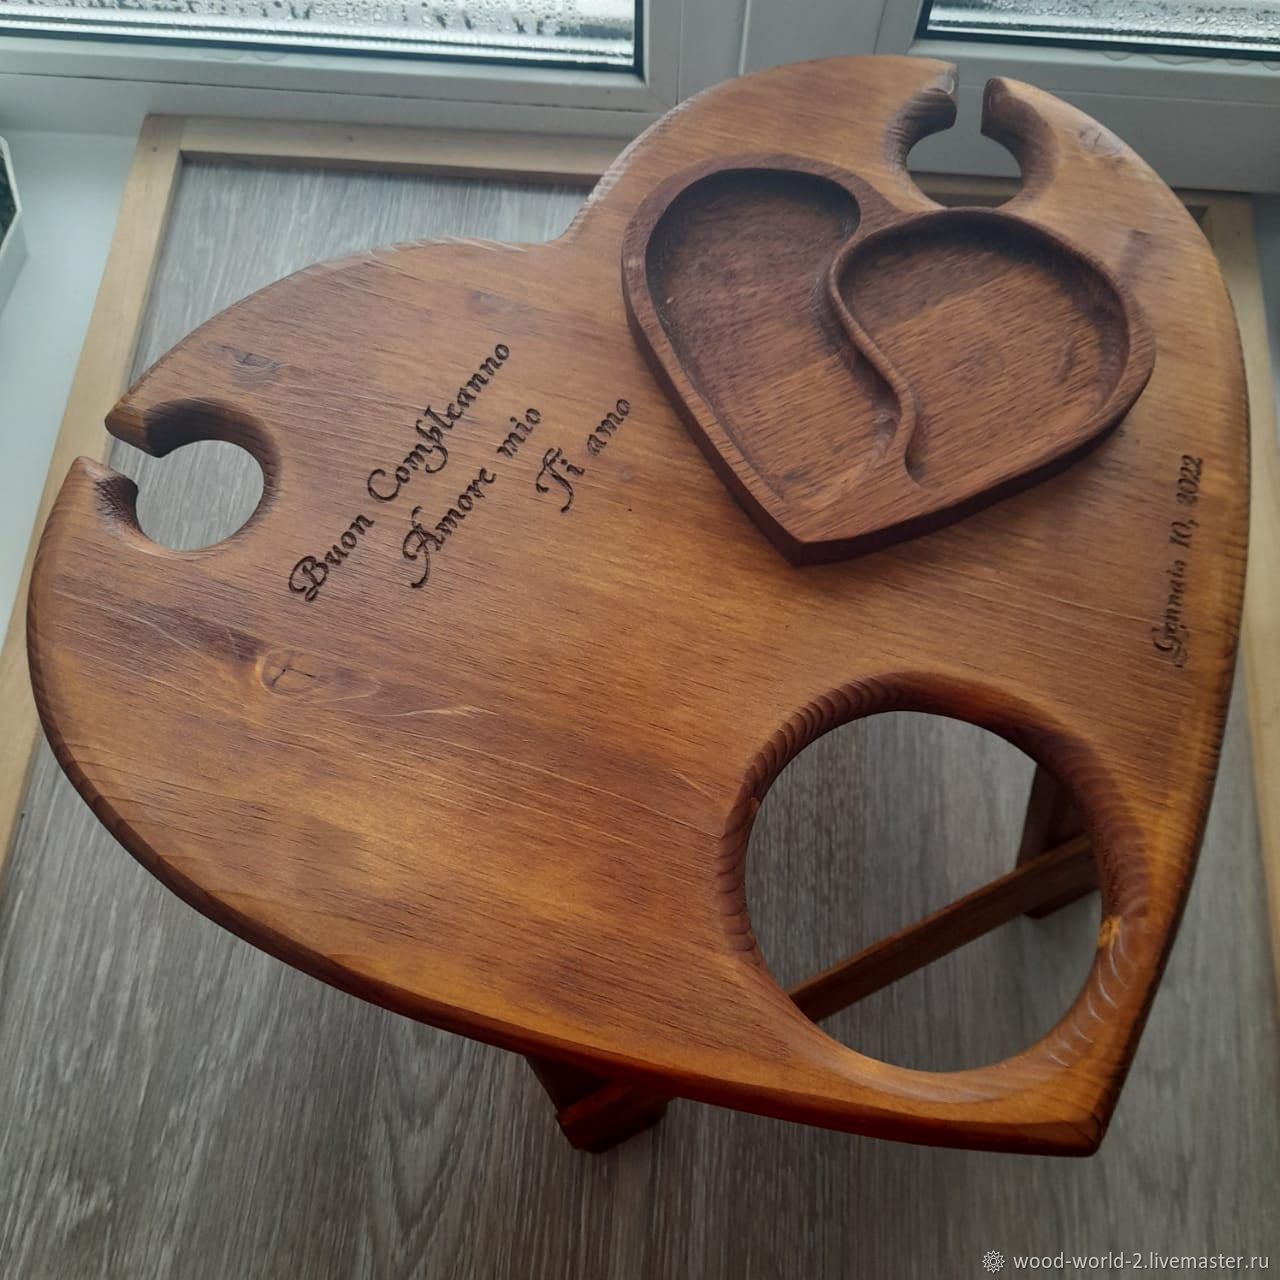 Винный столик с менажницей из дерева